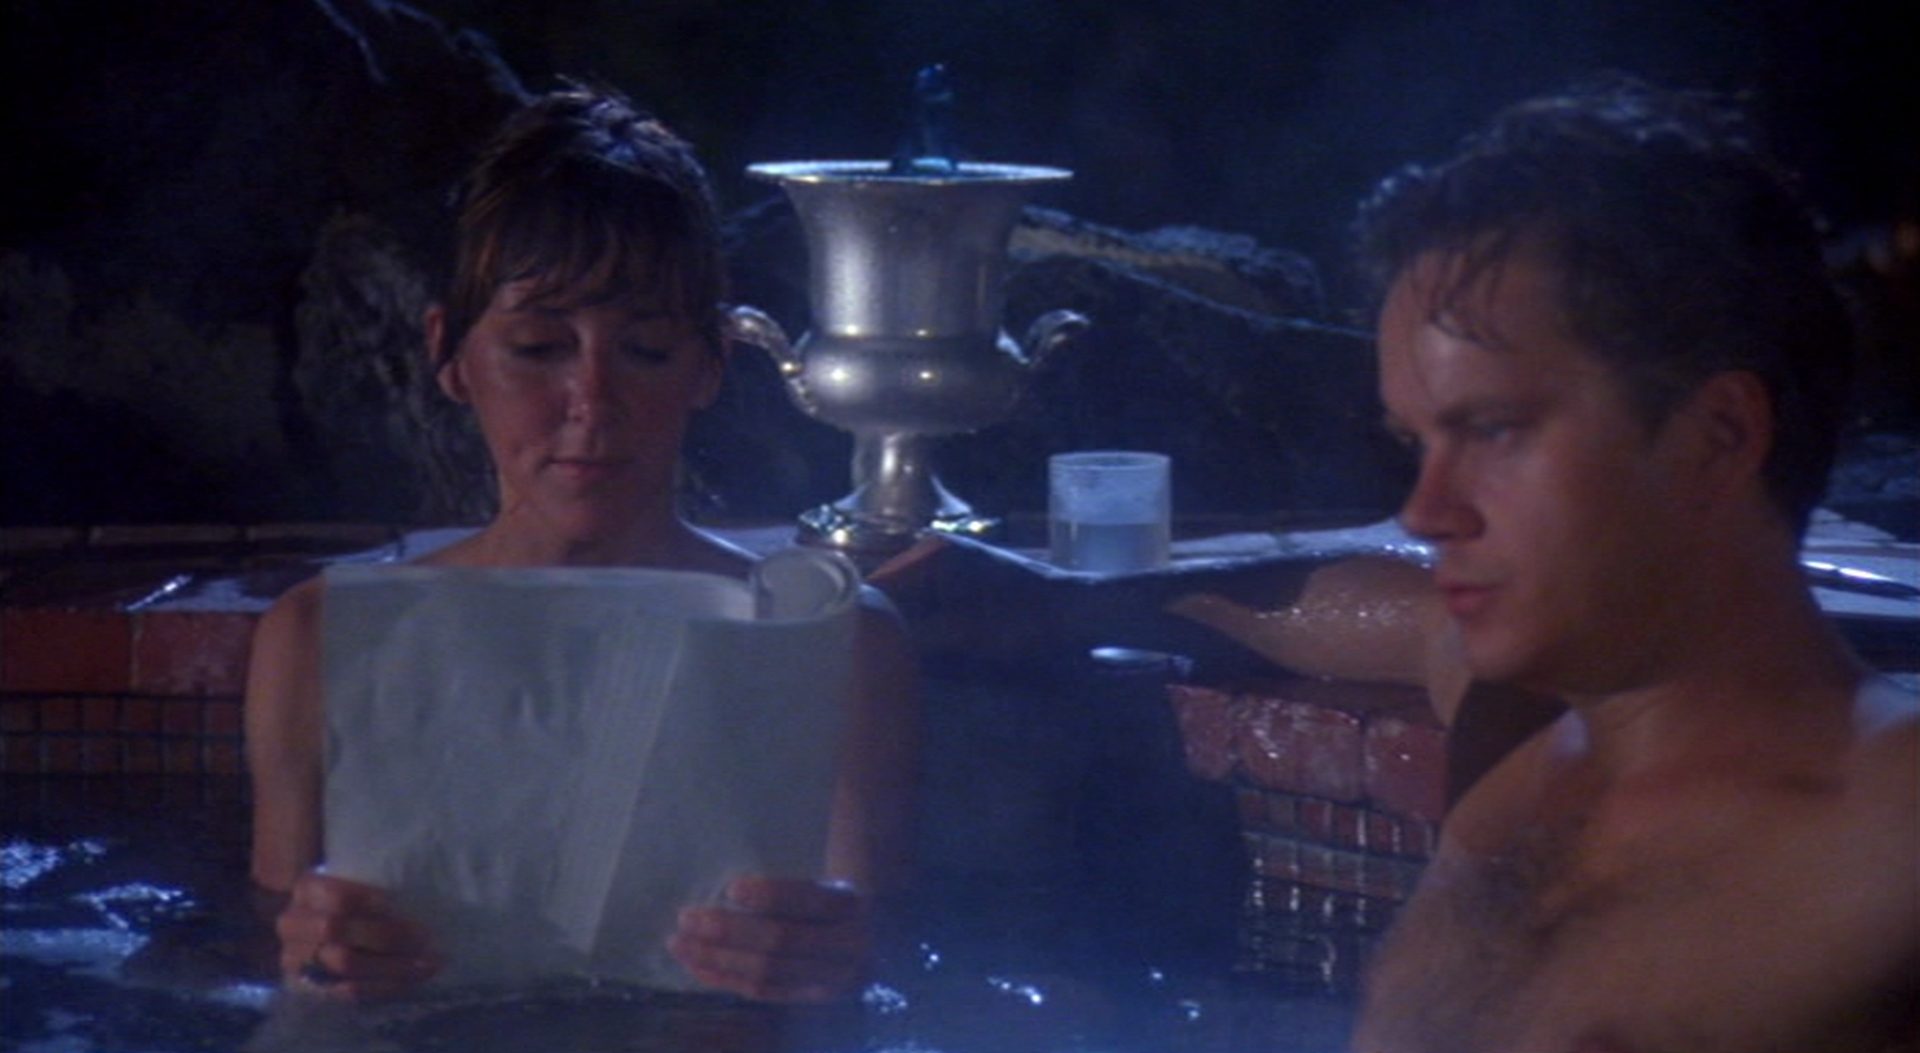 Nahaufnahme von Bonnie Sherow (Cynthia Stevenson) und Griffin Mill (Tim Robbins) abends im Pool; sie liest ein Skript, er schaut nachdenklich.